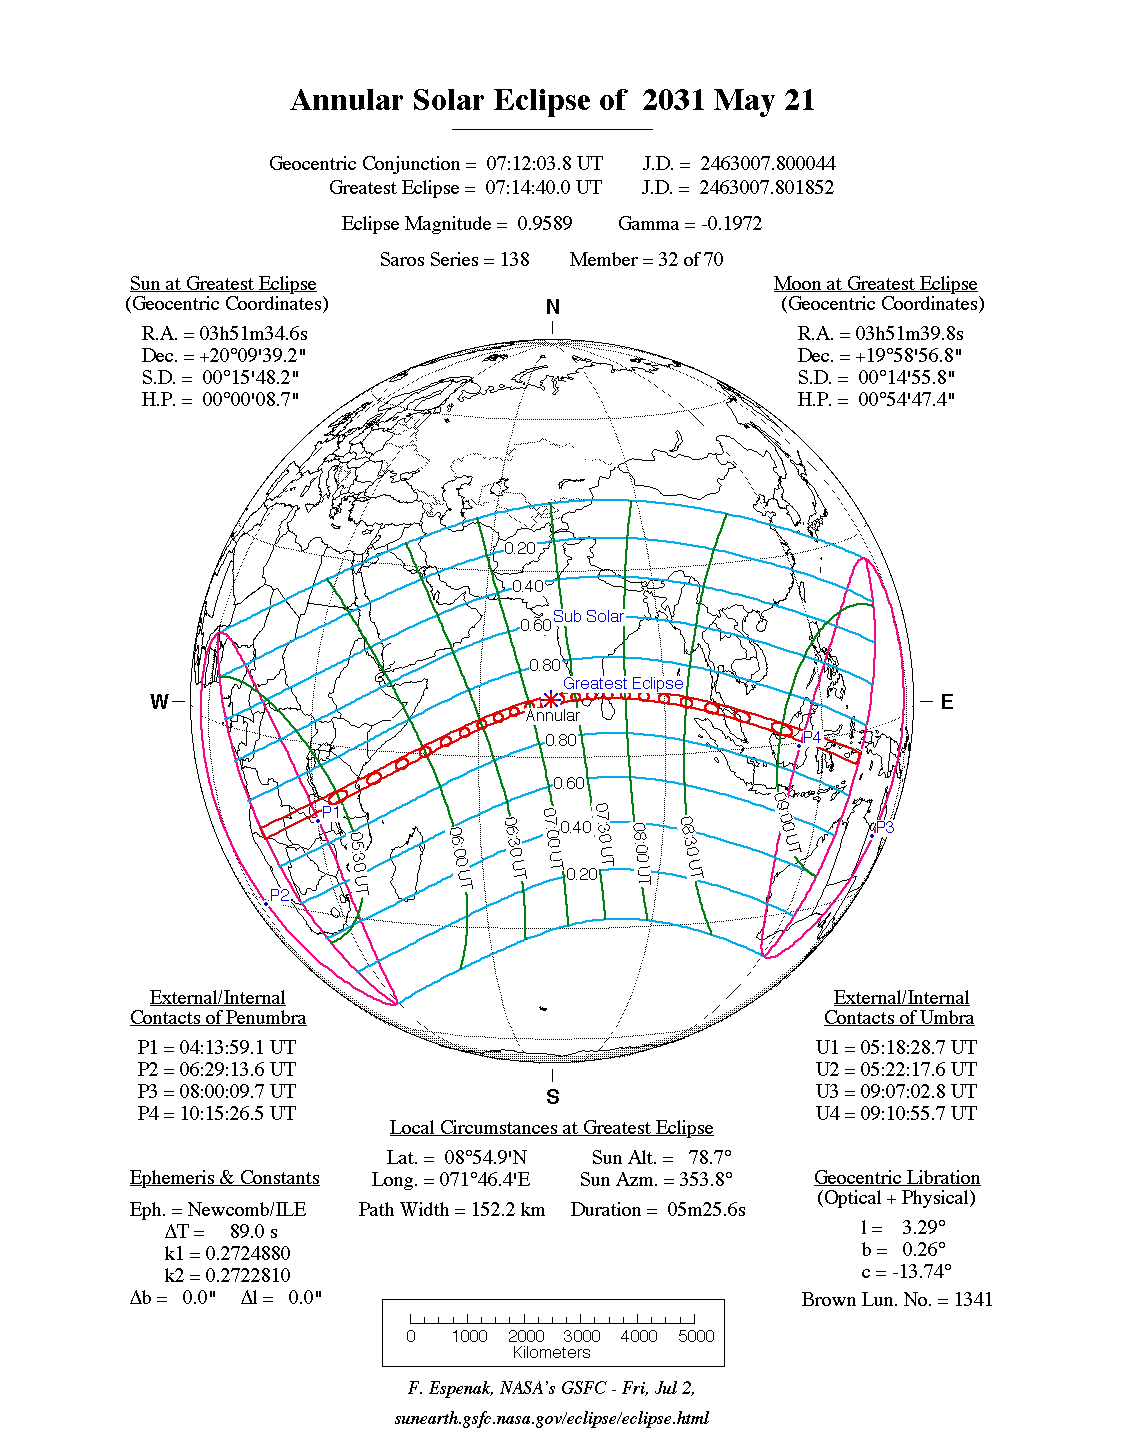 Verlauf der Ringförmigen Sonnenfinsternis am 21.05.2031